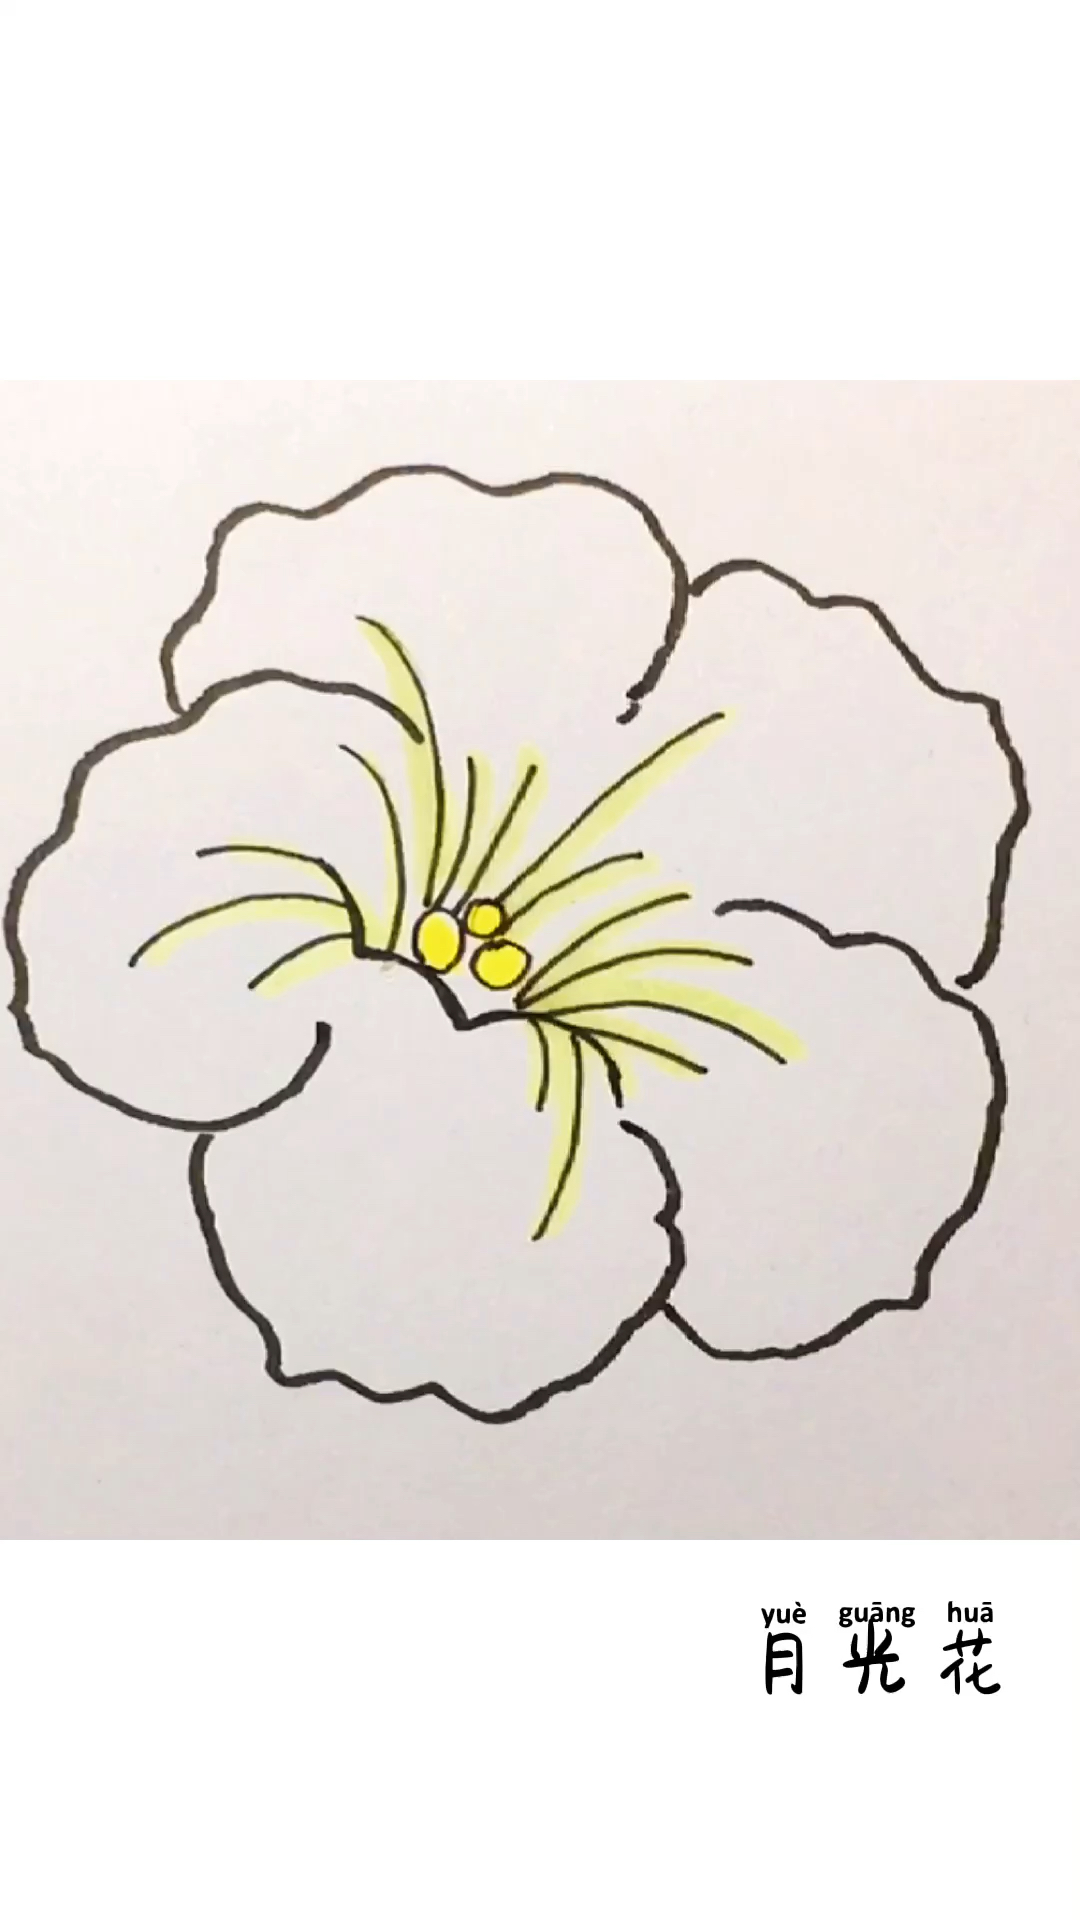 儿童亲子绘画教程,一朵简单大方的的月光花